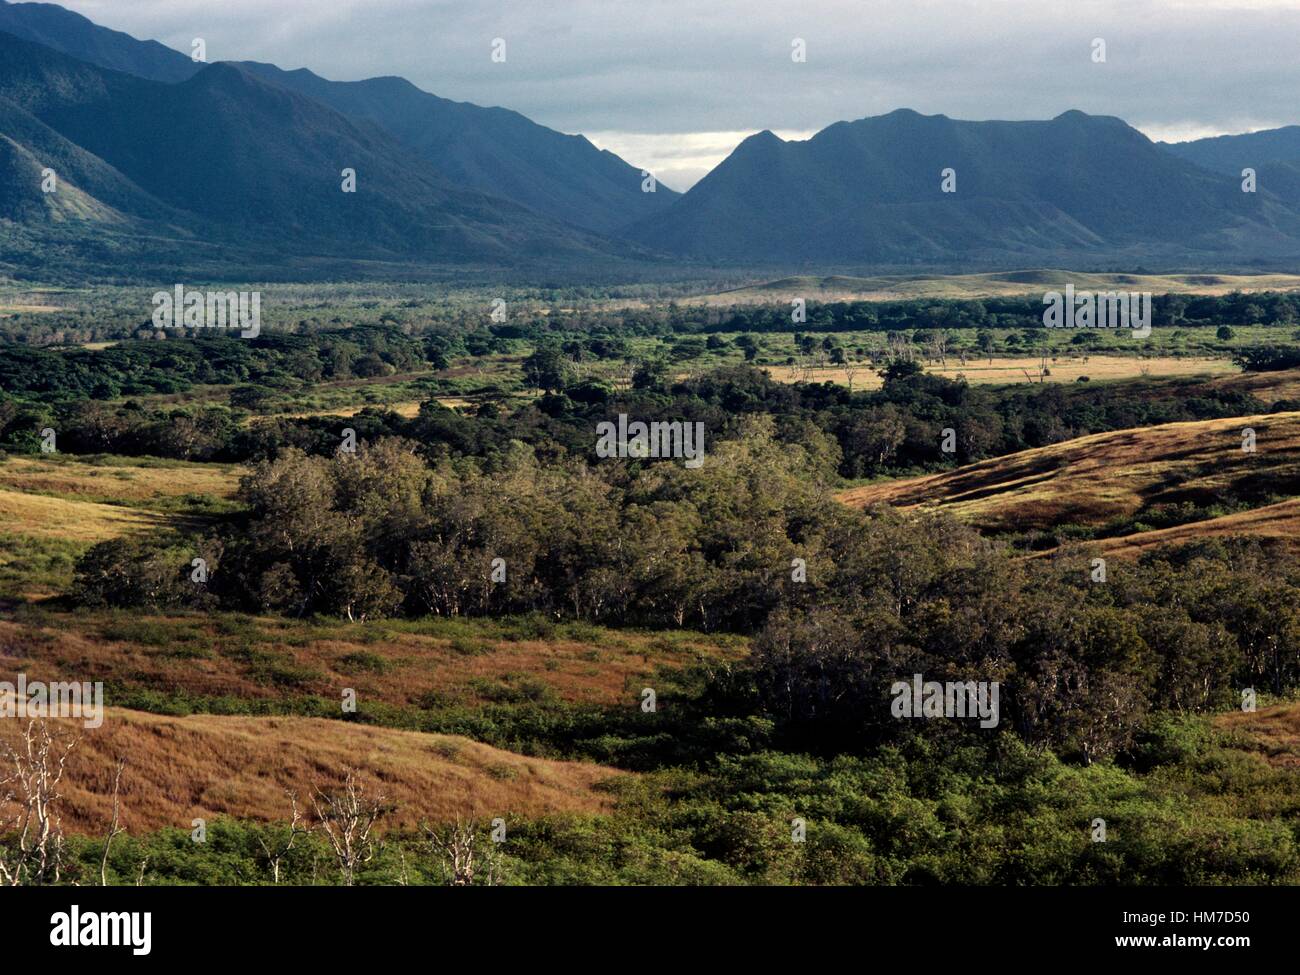 Coperta di vegetazione il paesaggio con le gamme della montagna in background, zona nord della Nuova Caledonia isola, territorio di oltremare Foto Stock